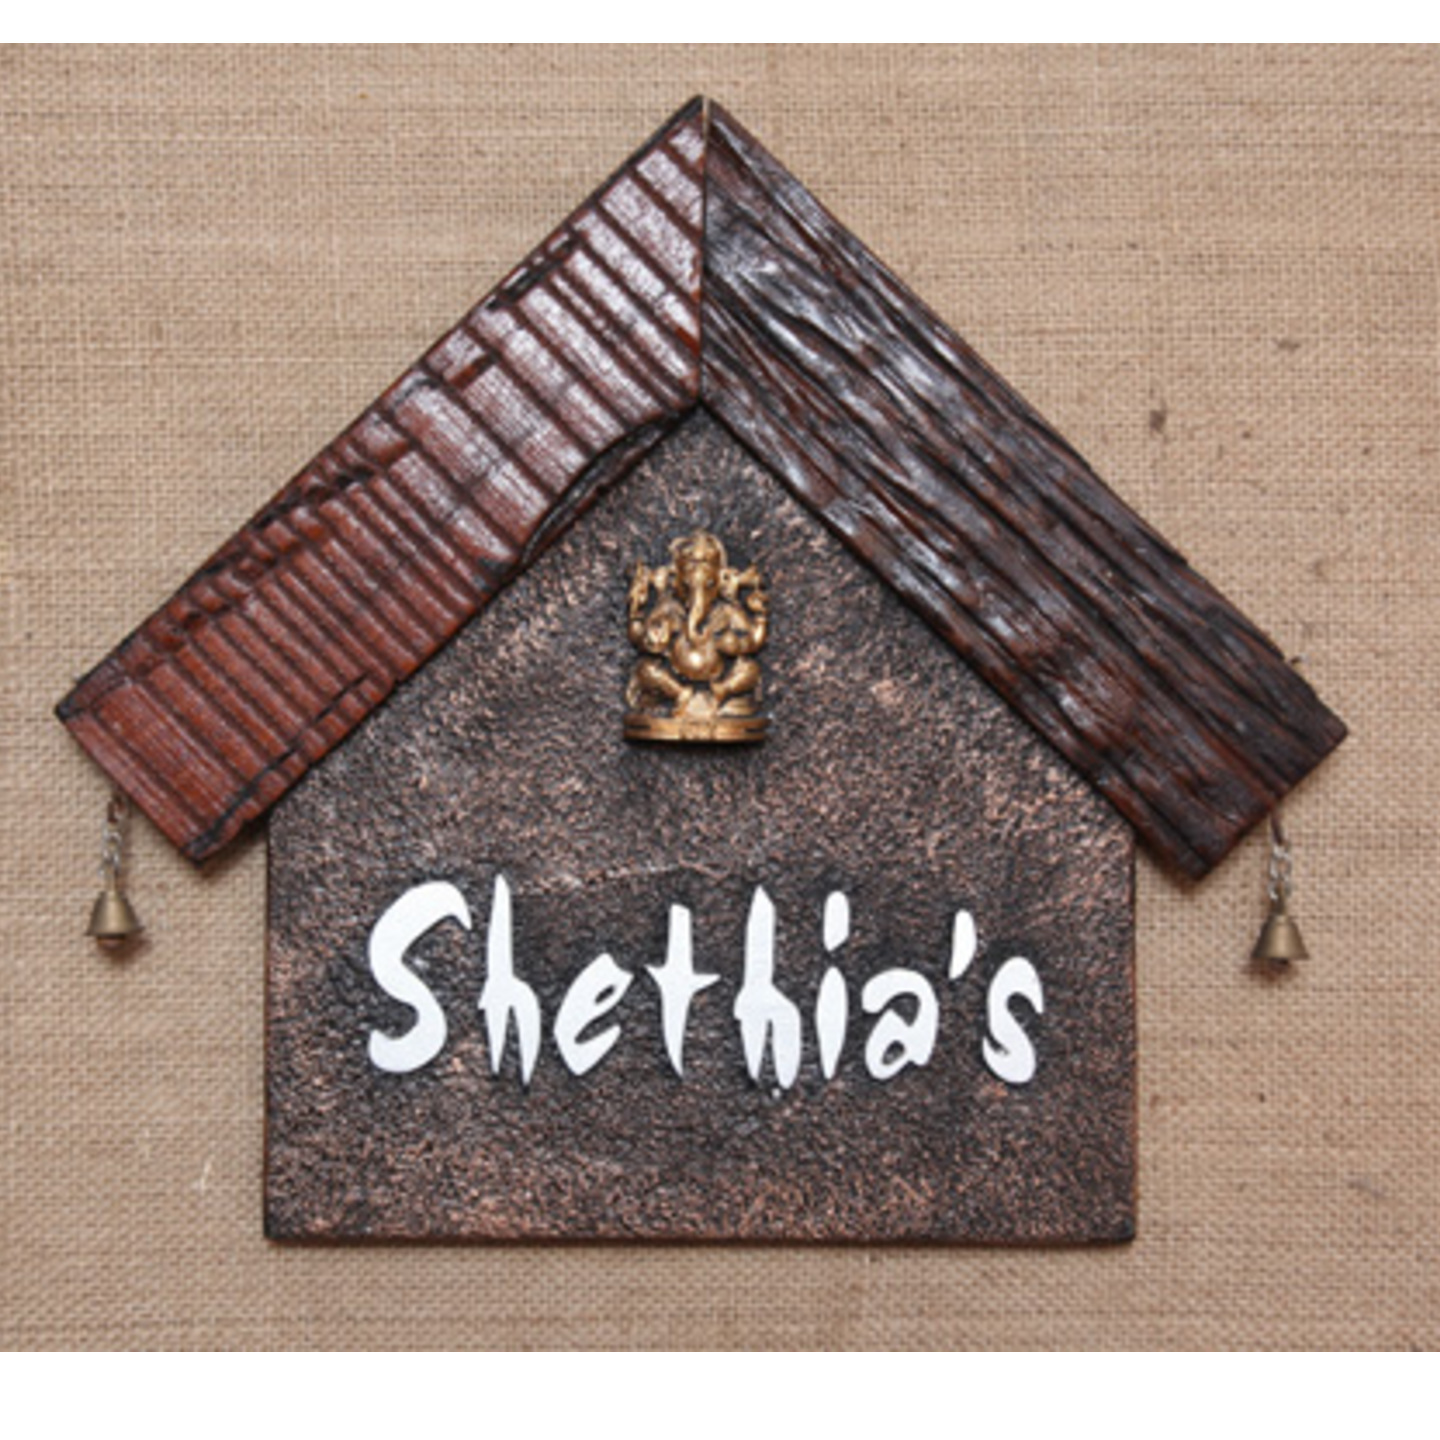 Shethia